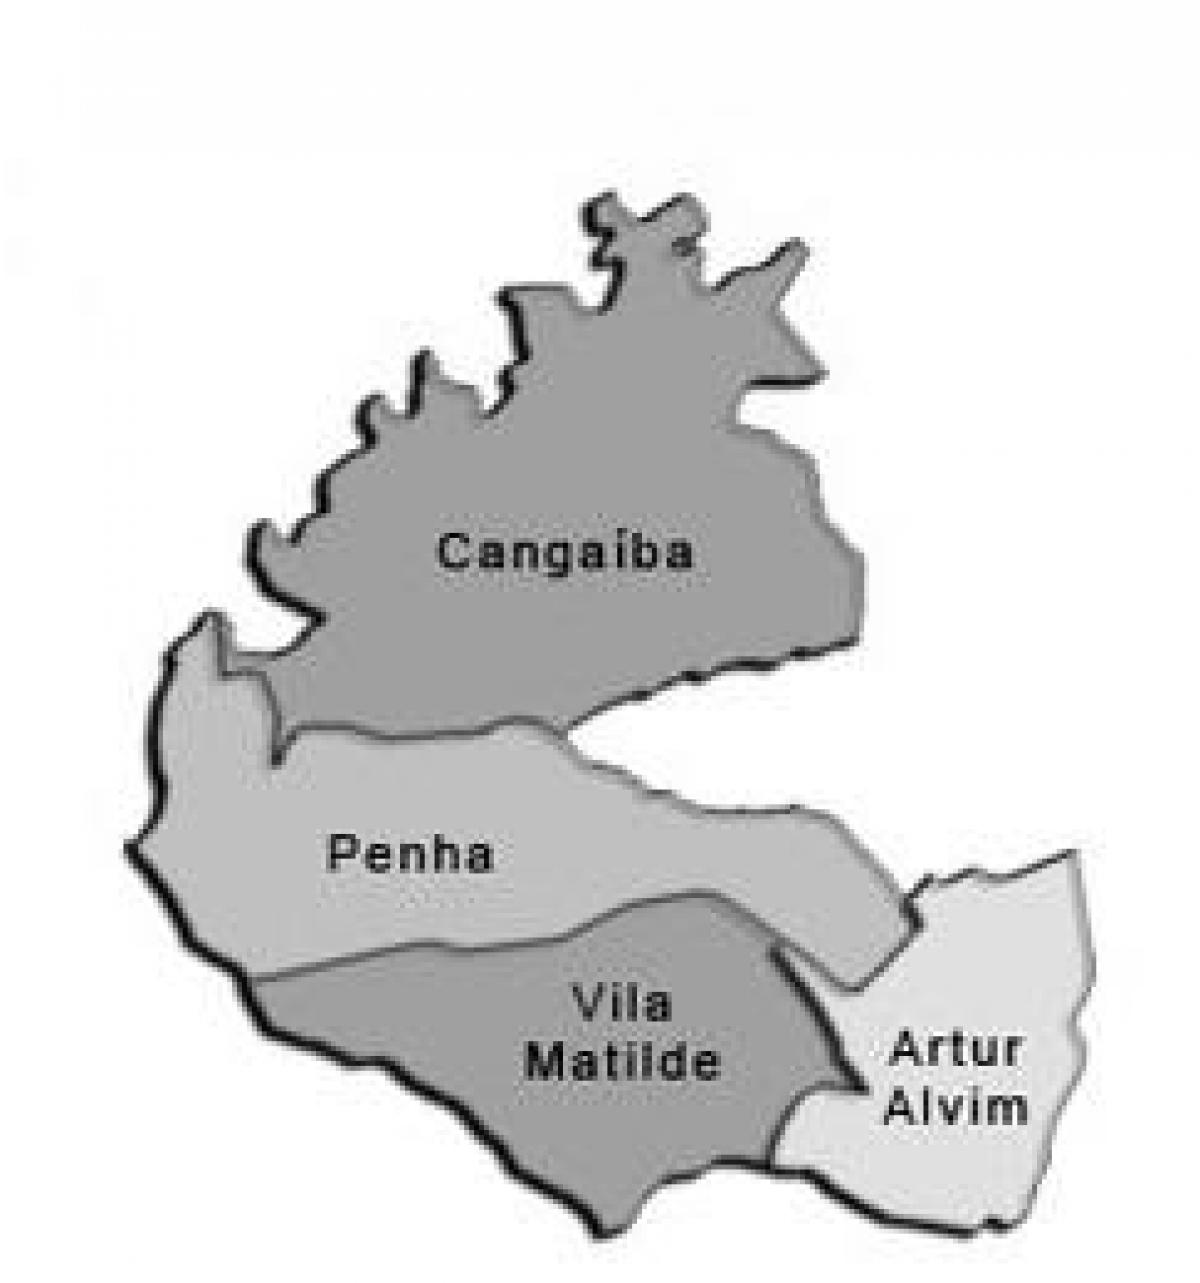 מפה של Penha תת-פריפקטורה